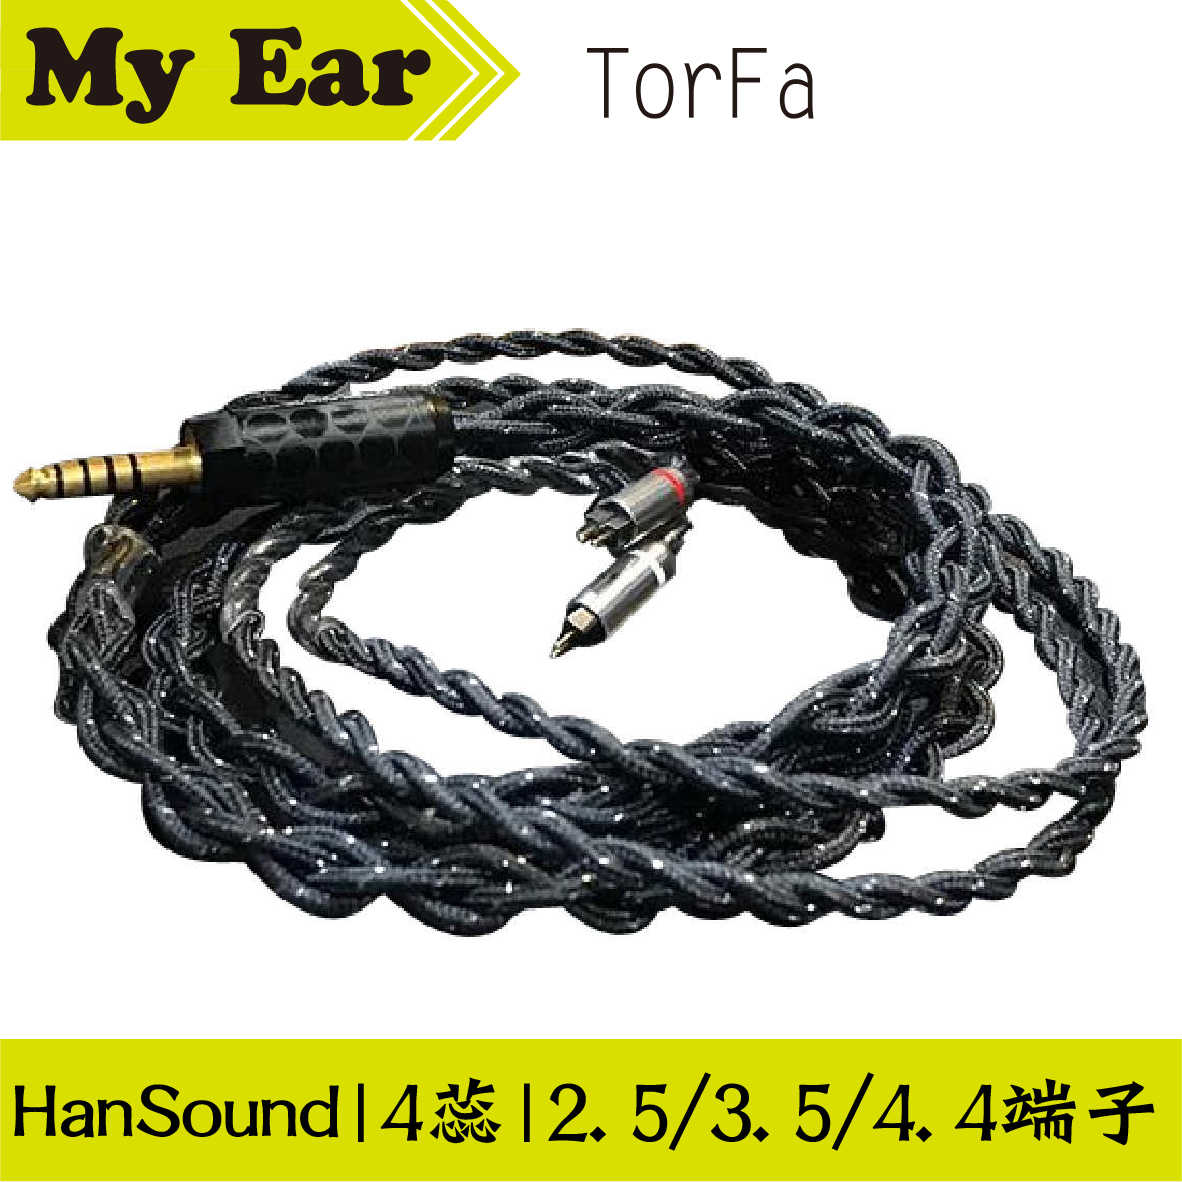 HanSound 漢聲 TorFa 旗艦 耳機升級線 客製線 | My Ear耳機專門店